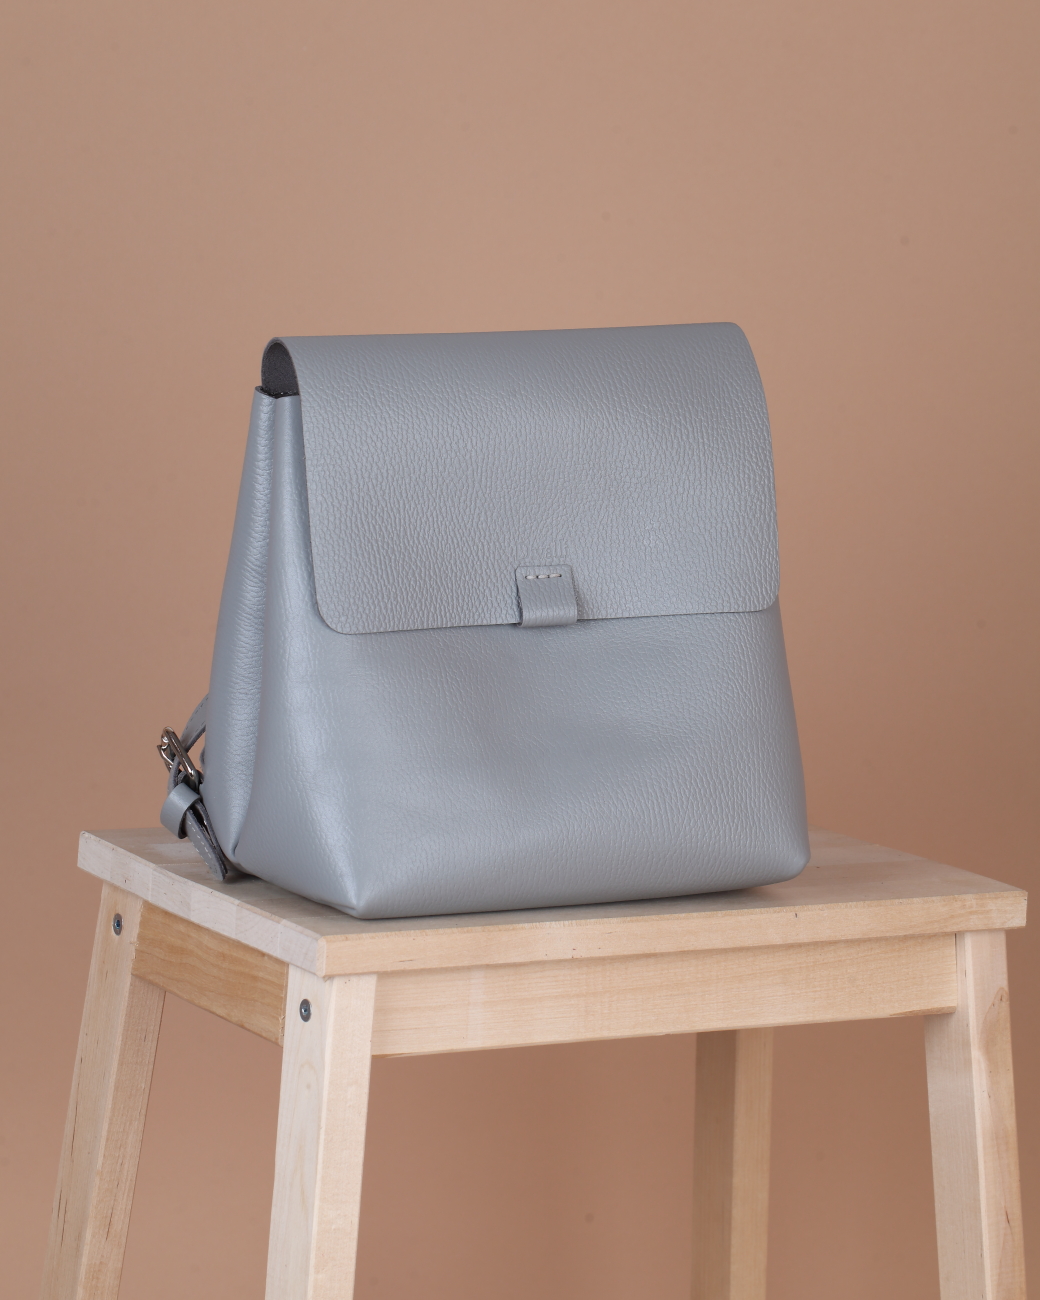 Женский рюкзак из натуральной кожи серый B001 grey grain